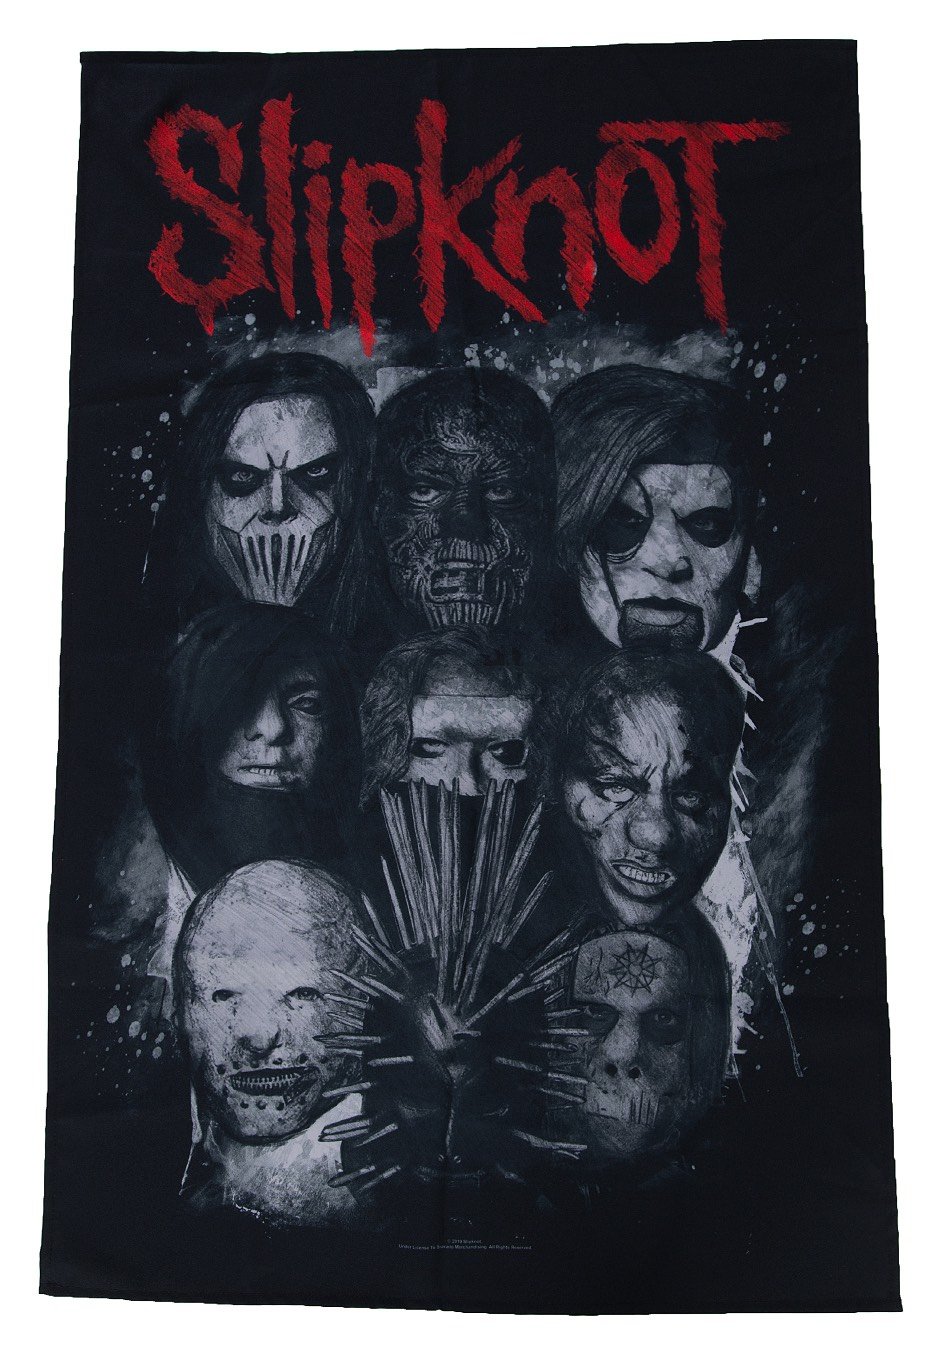 Slipknot - Masks - Flag